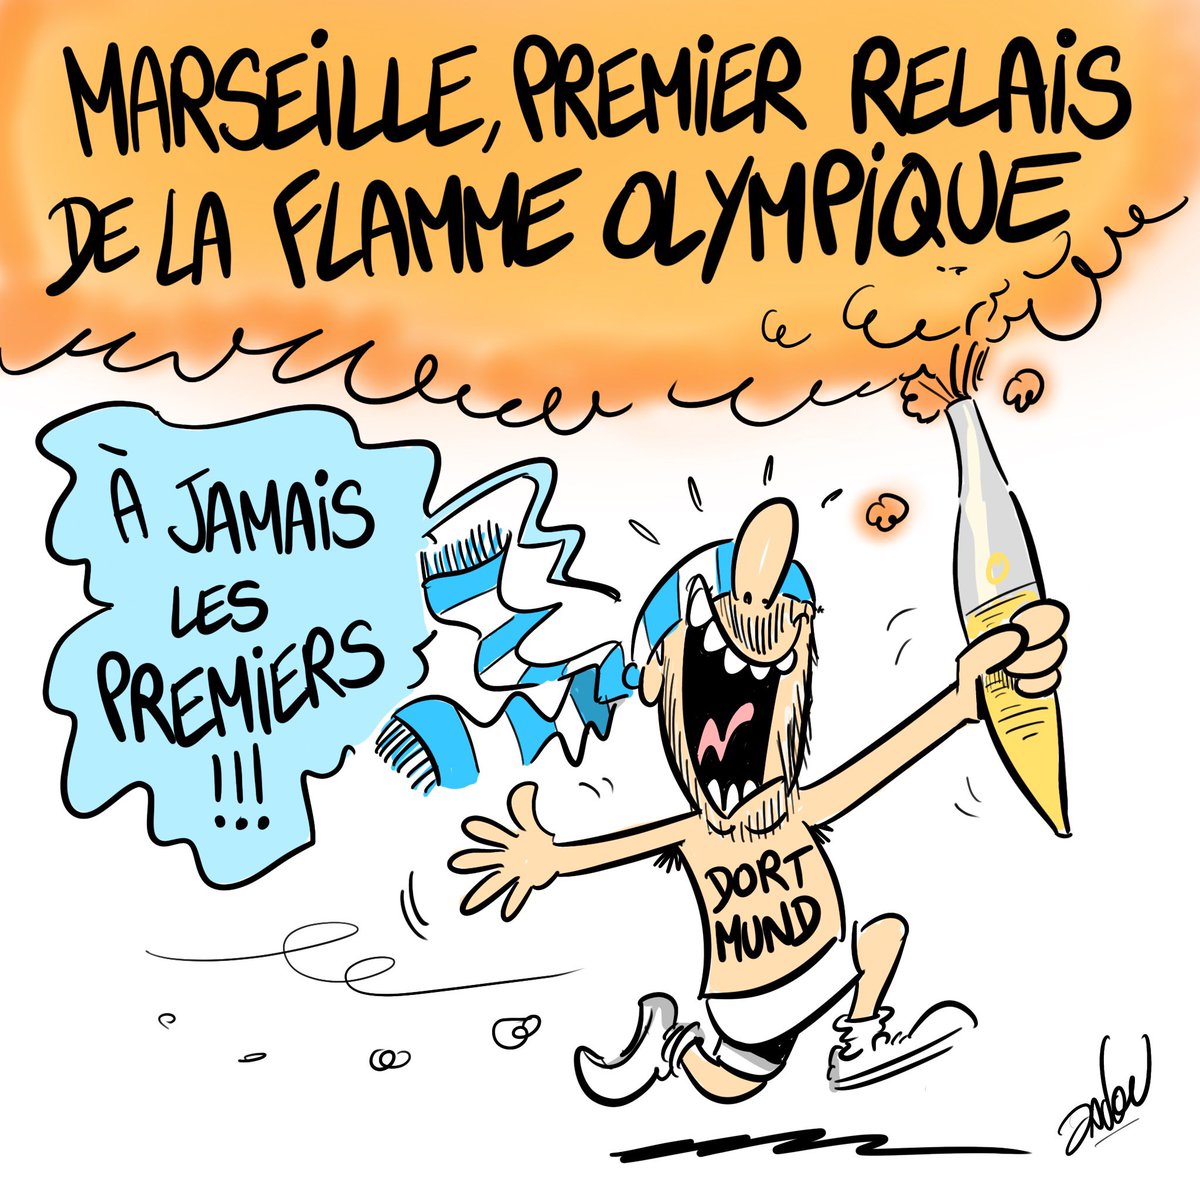 Marseille, premier relais de la flamme olympique ! 
#Dadou ✍🏻 dadoubd.com

#Paris2024 #JO2024 #Monparisolympique #psg #PSGBVB #PSGDOR #8mai #om #ATAOM #JO #Paris #marseillais